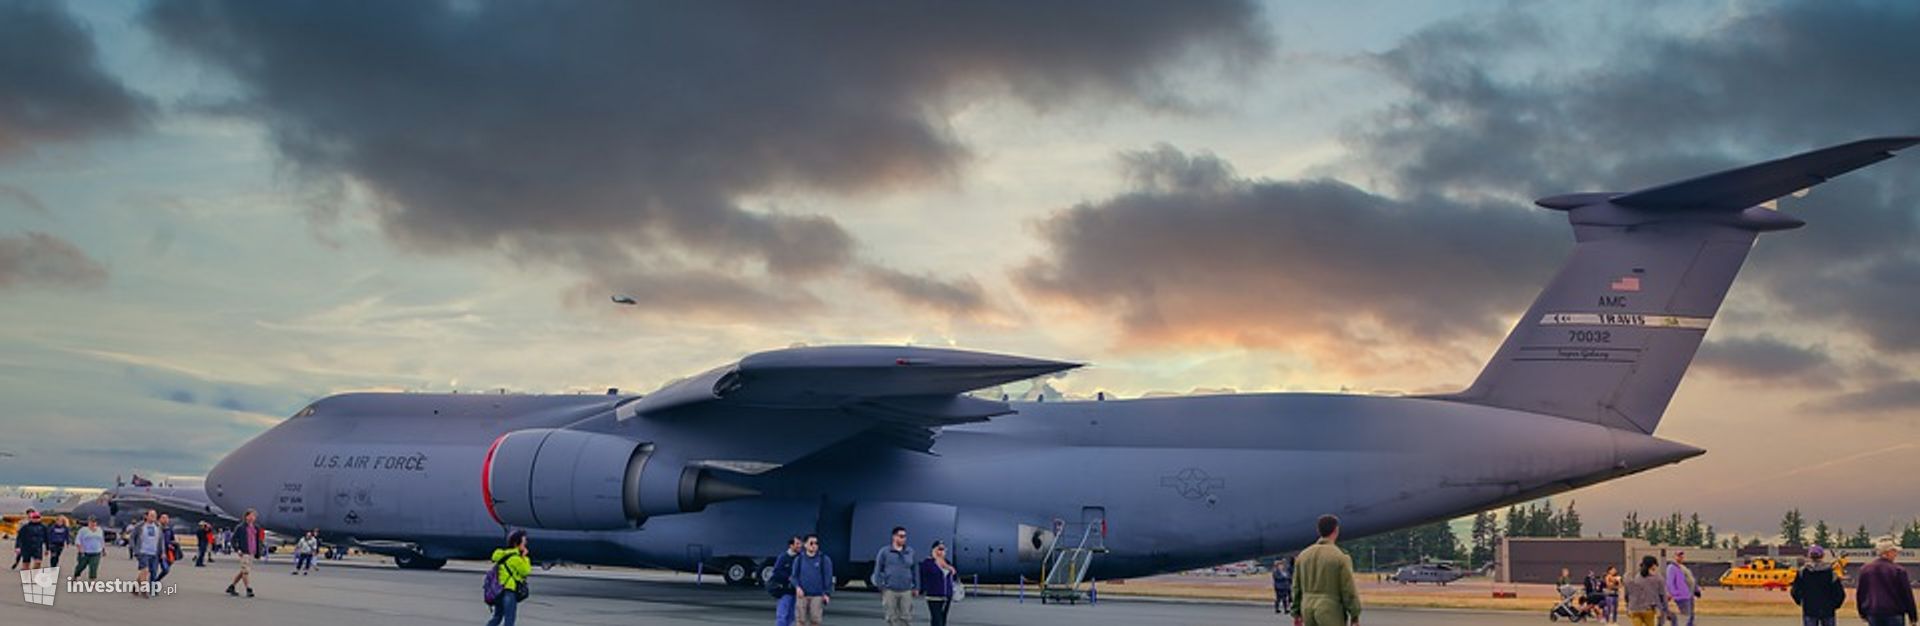 Lotnicza baza załadunkowo-rozładunkowa Sił Powietrznych Stanów Zjednoczonych